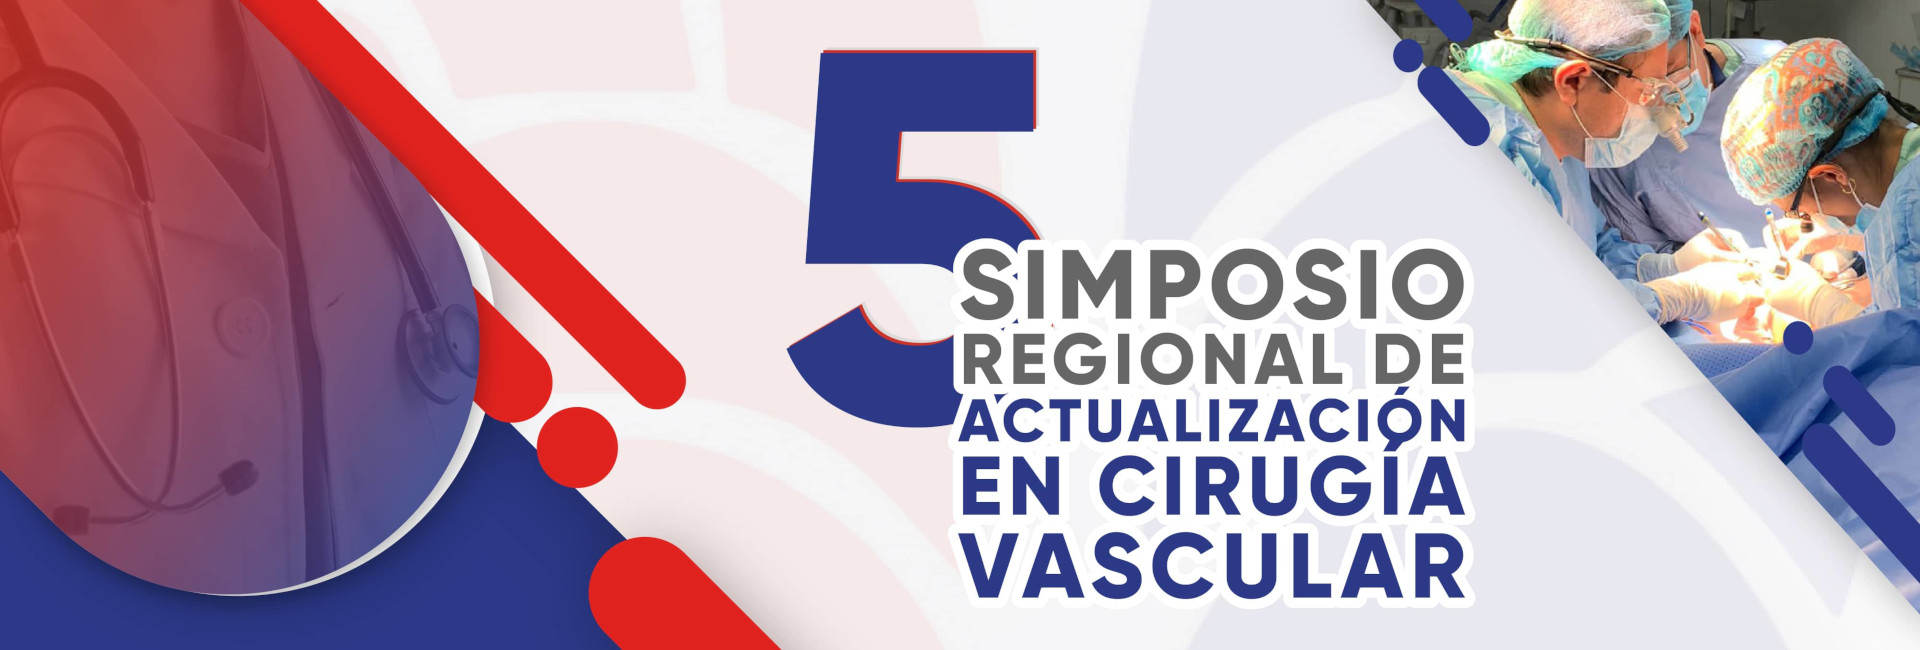 5° simposio regional de actualización en cirugía vascular